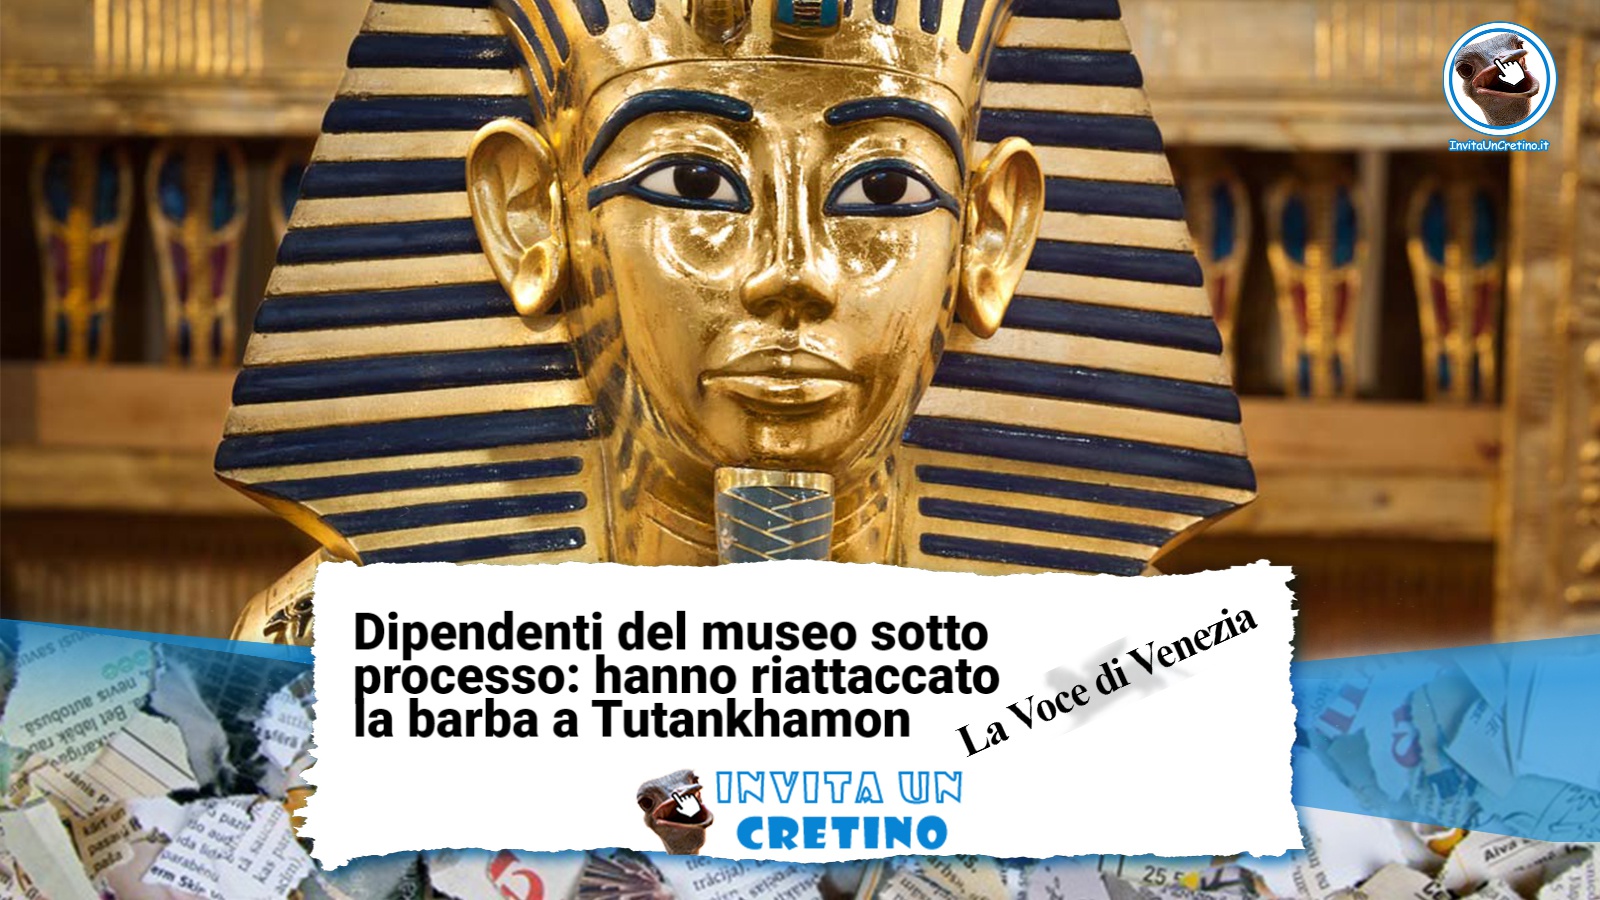 dipendenti riattaccano barba tutankhamon notizie divertenti la voce di venezia